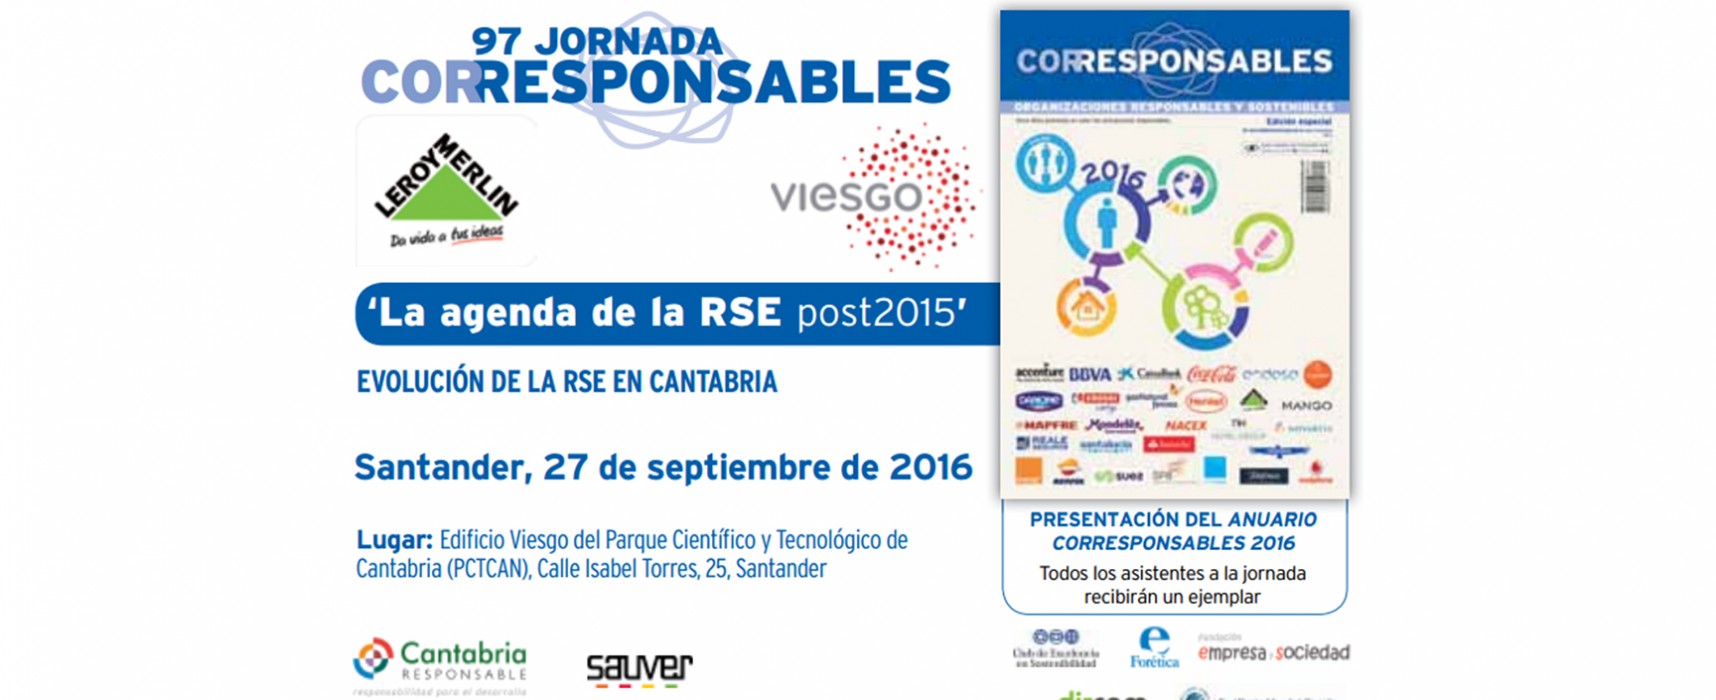 El 27 de septiembre tienes una cita con la RSE en Cantabria